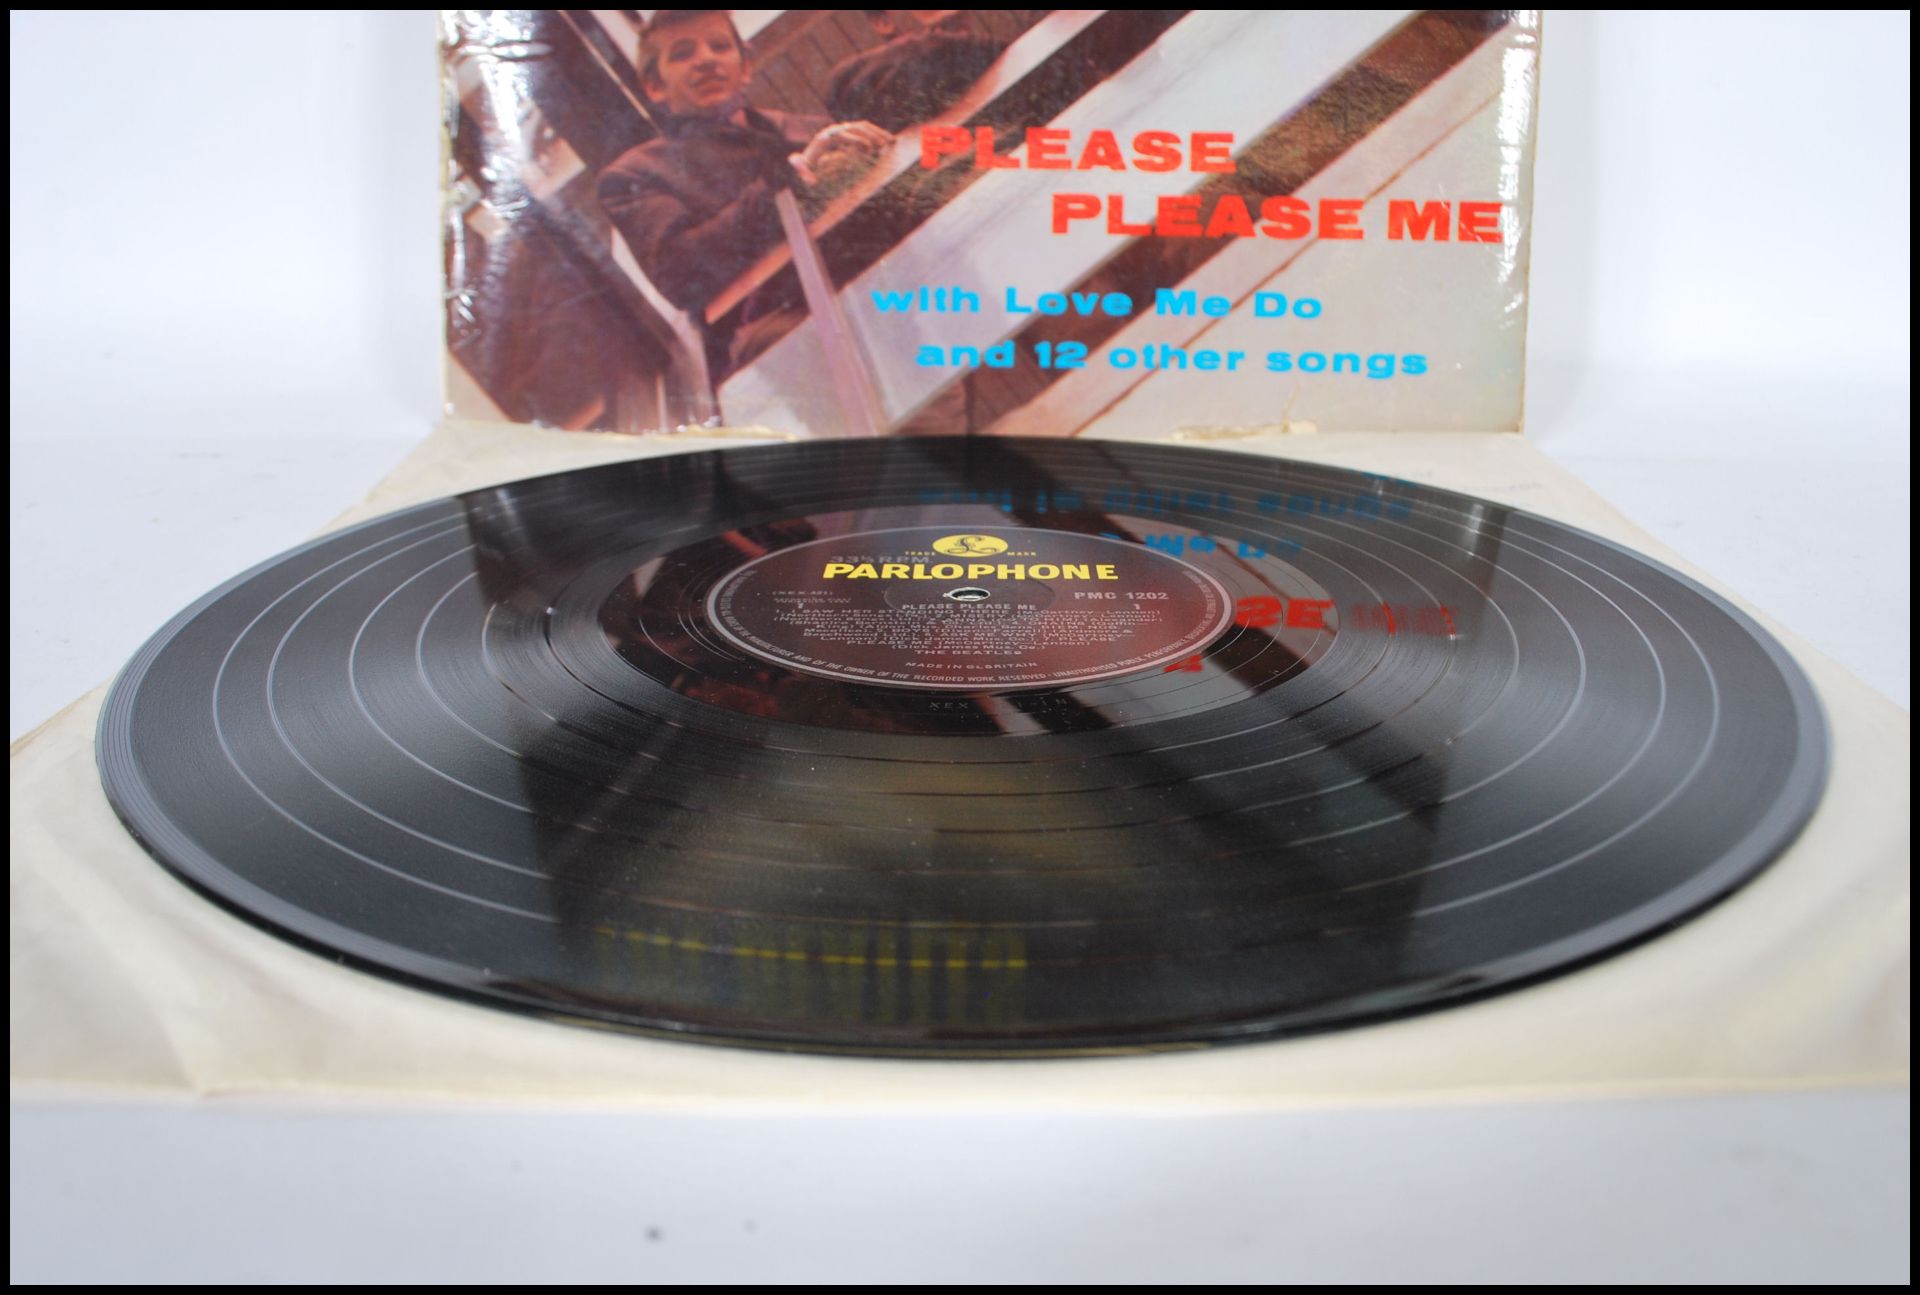 Vinyl long play LP record album by The Beatles - Please Please Me 1st pressing Mono, Parlophone - Bild 3 aus 6